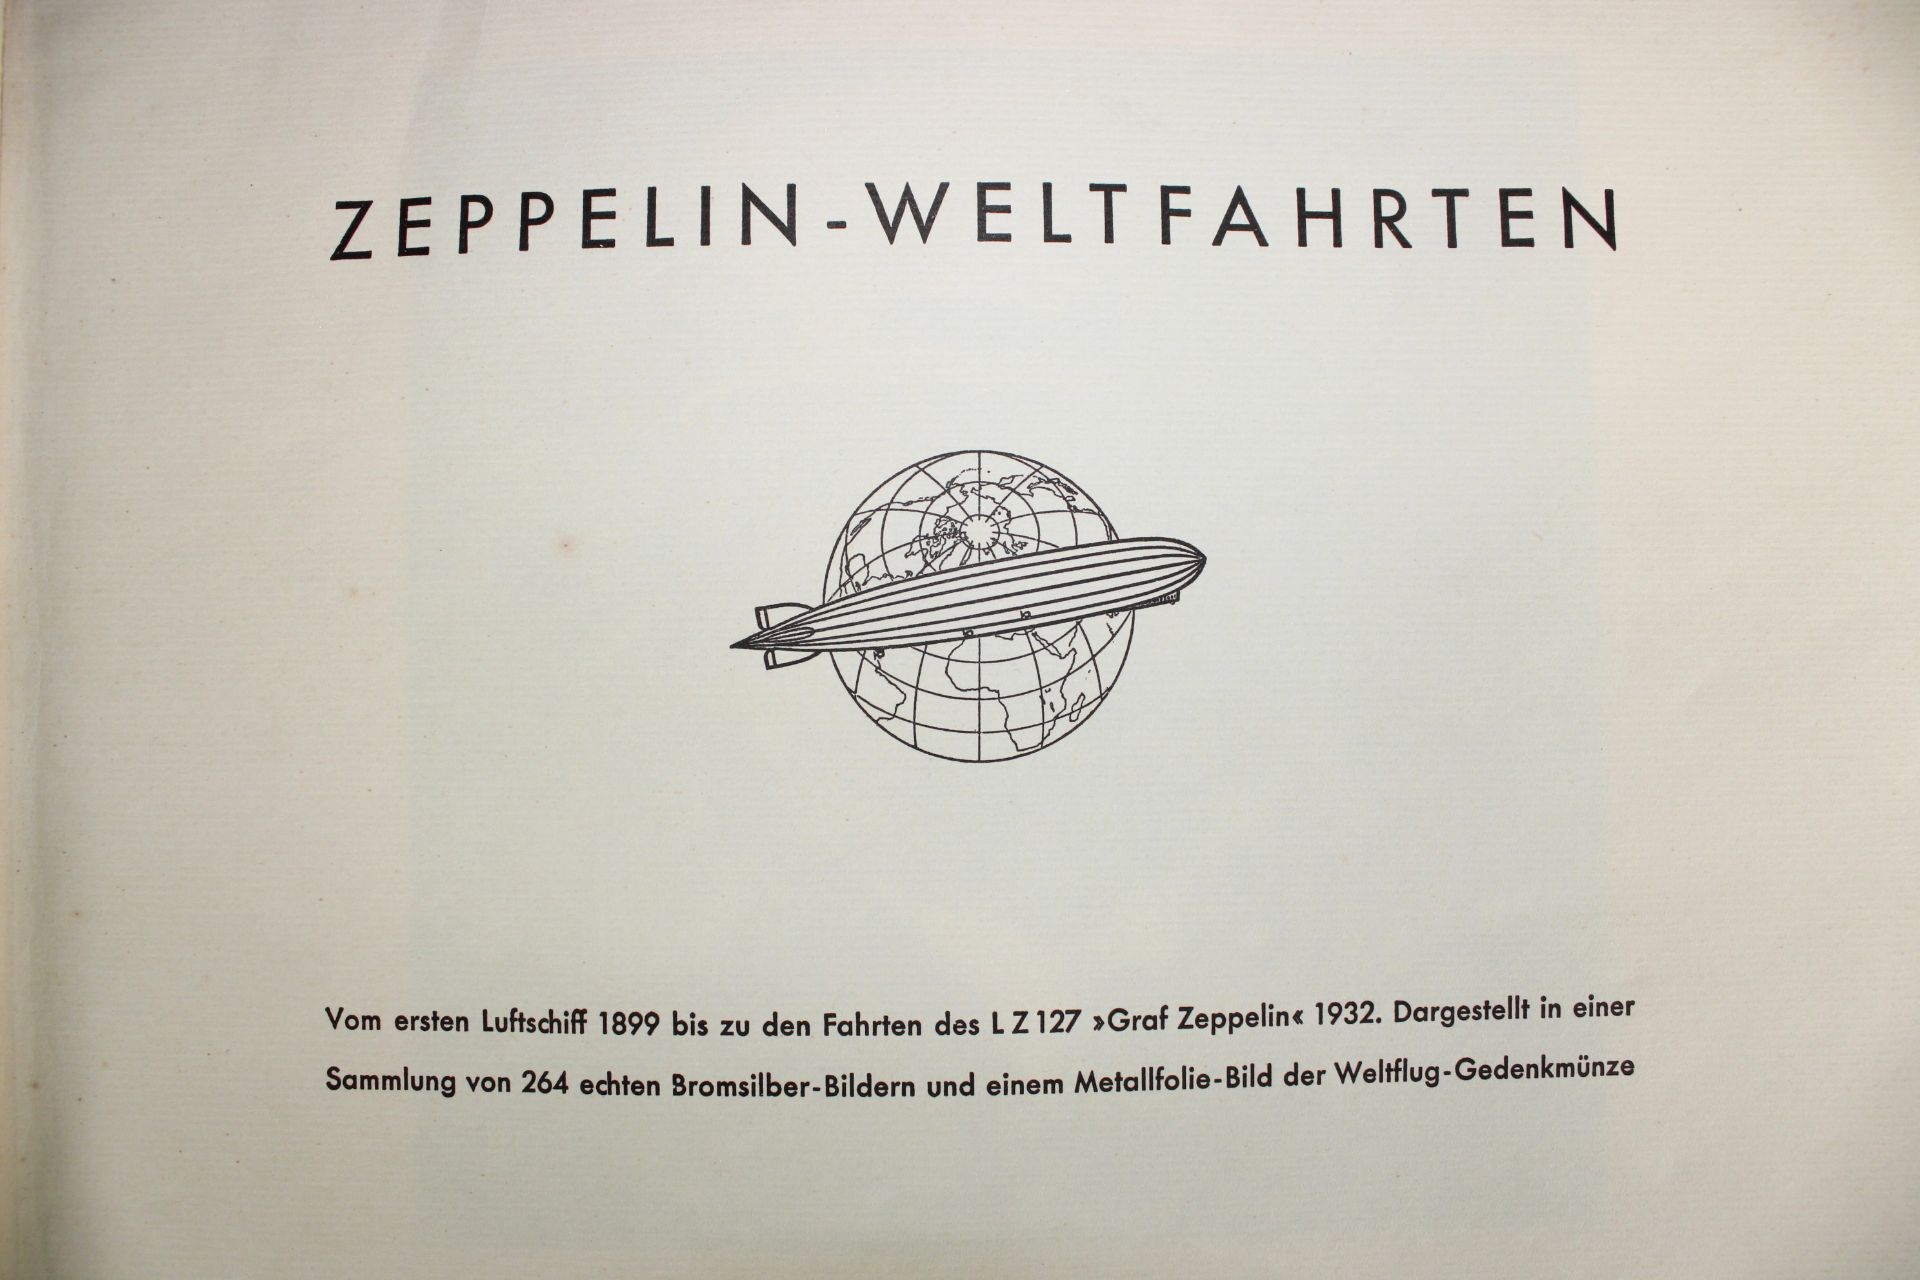 Sammelalbum Zeppelin-Weltfahrten, Bilderstelle Lohse, Dresden 1933 - Image 2 of 5